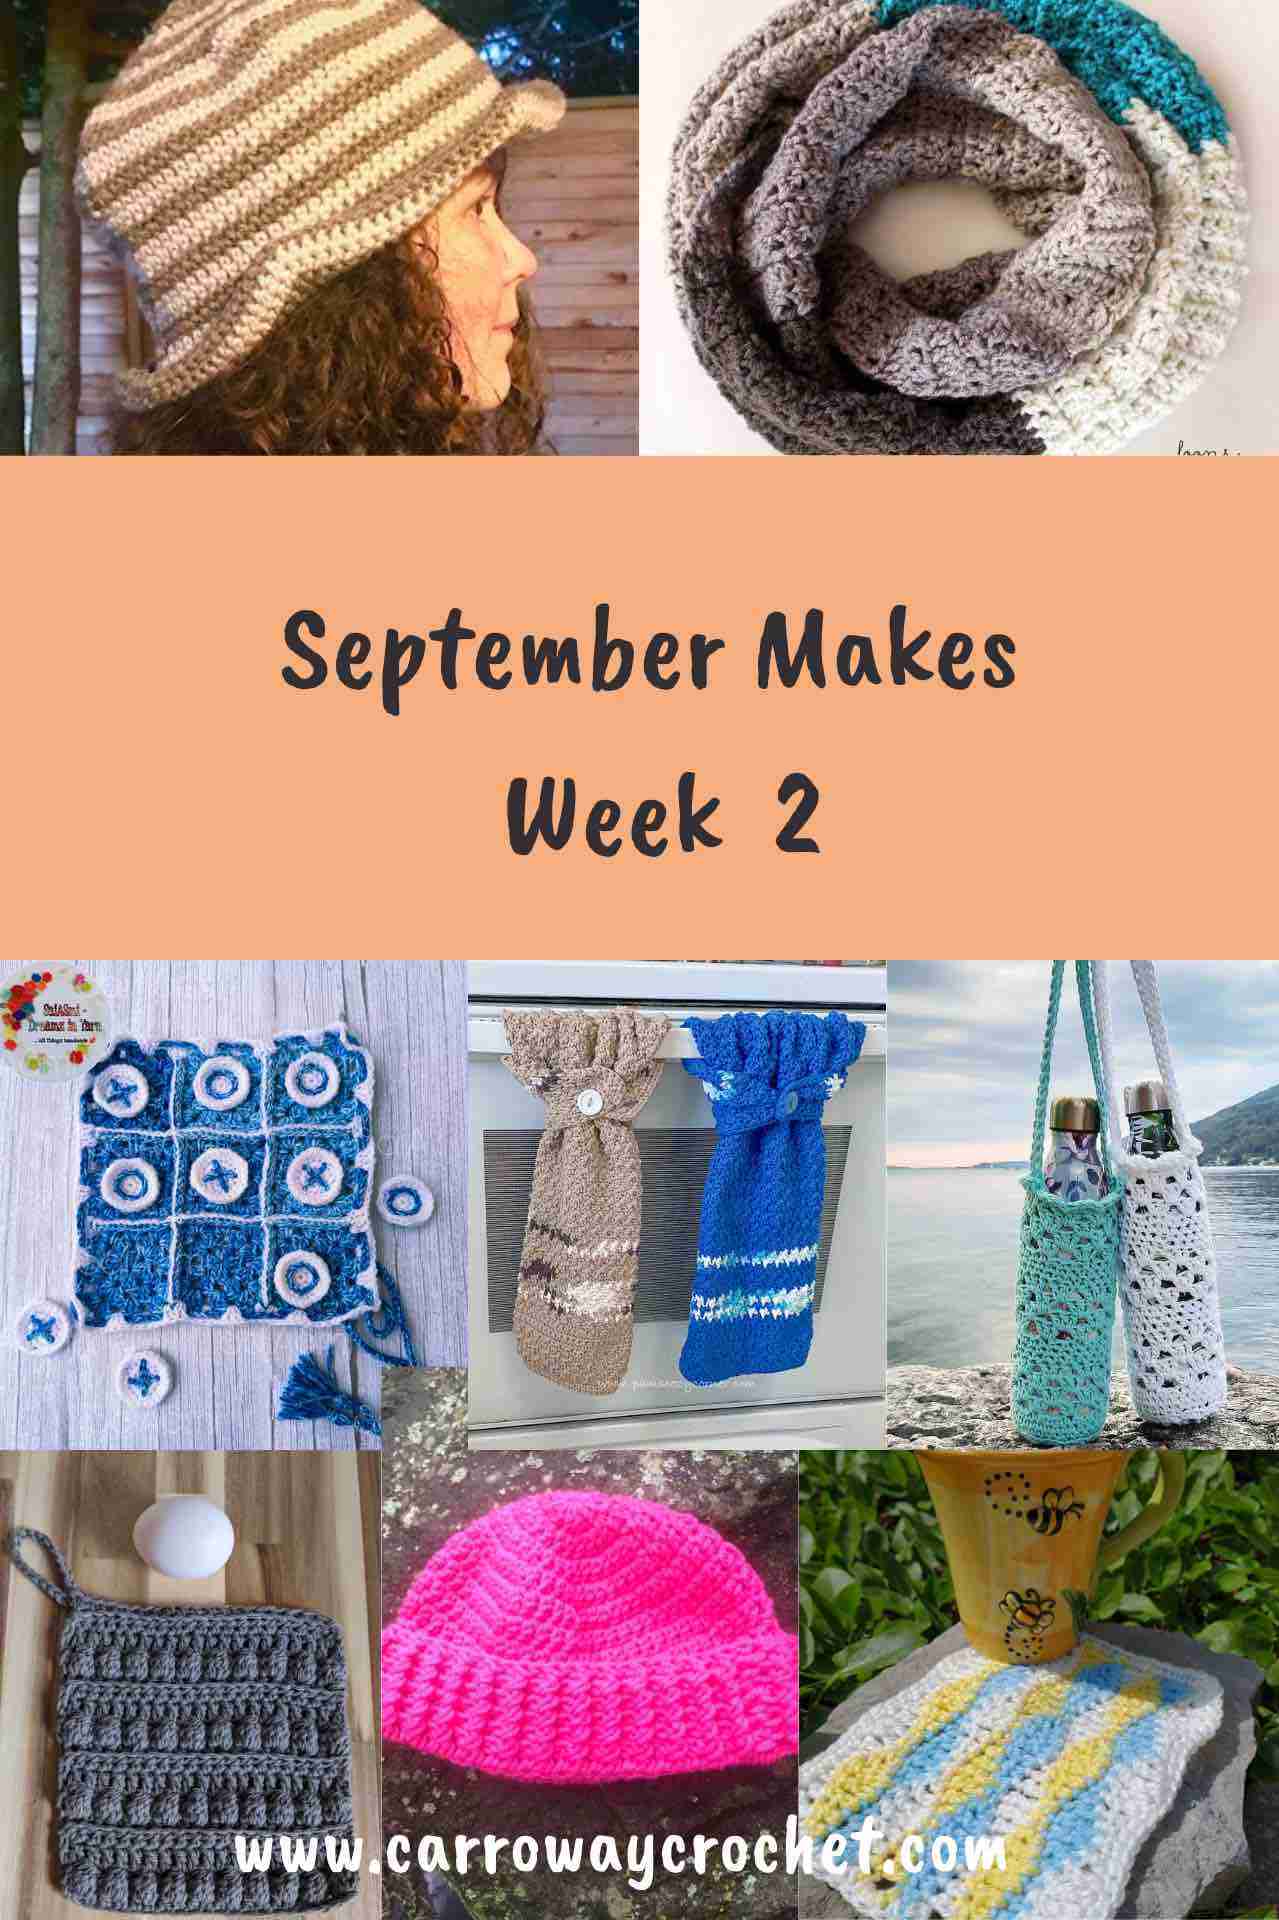 Free crochet patterns September Makes